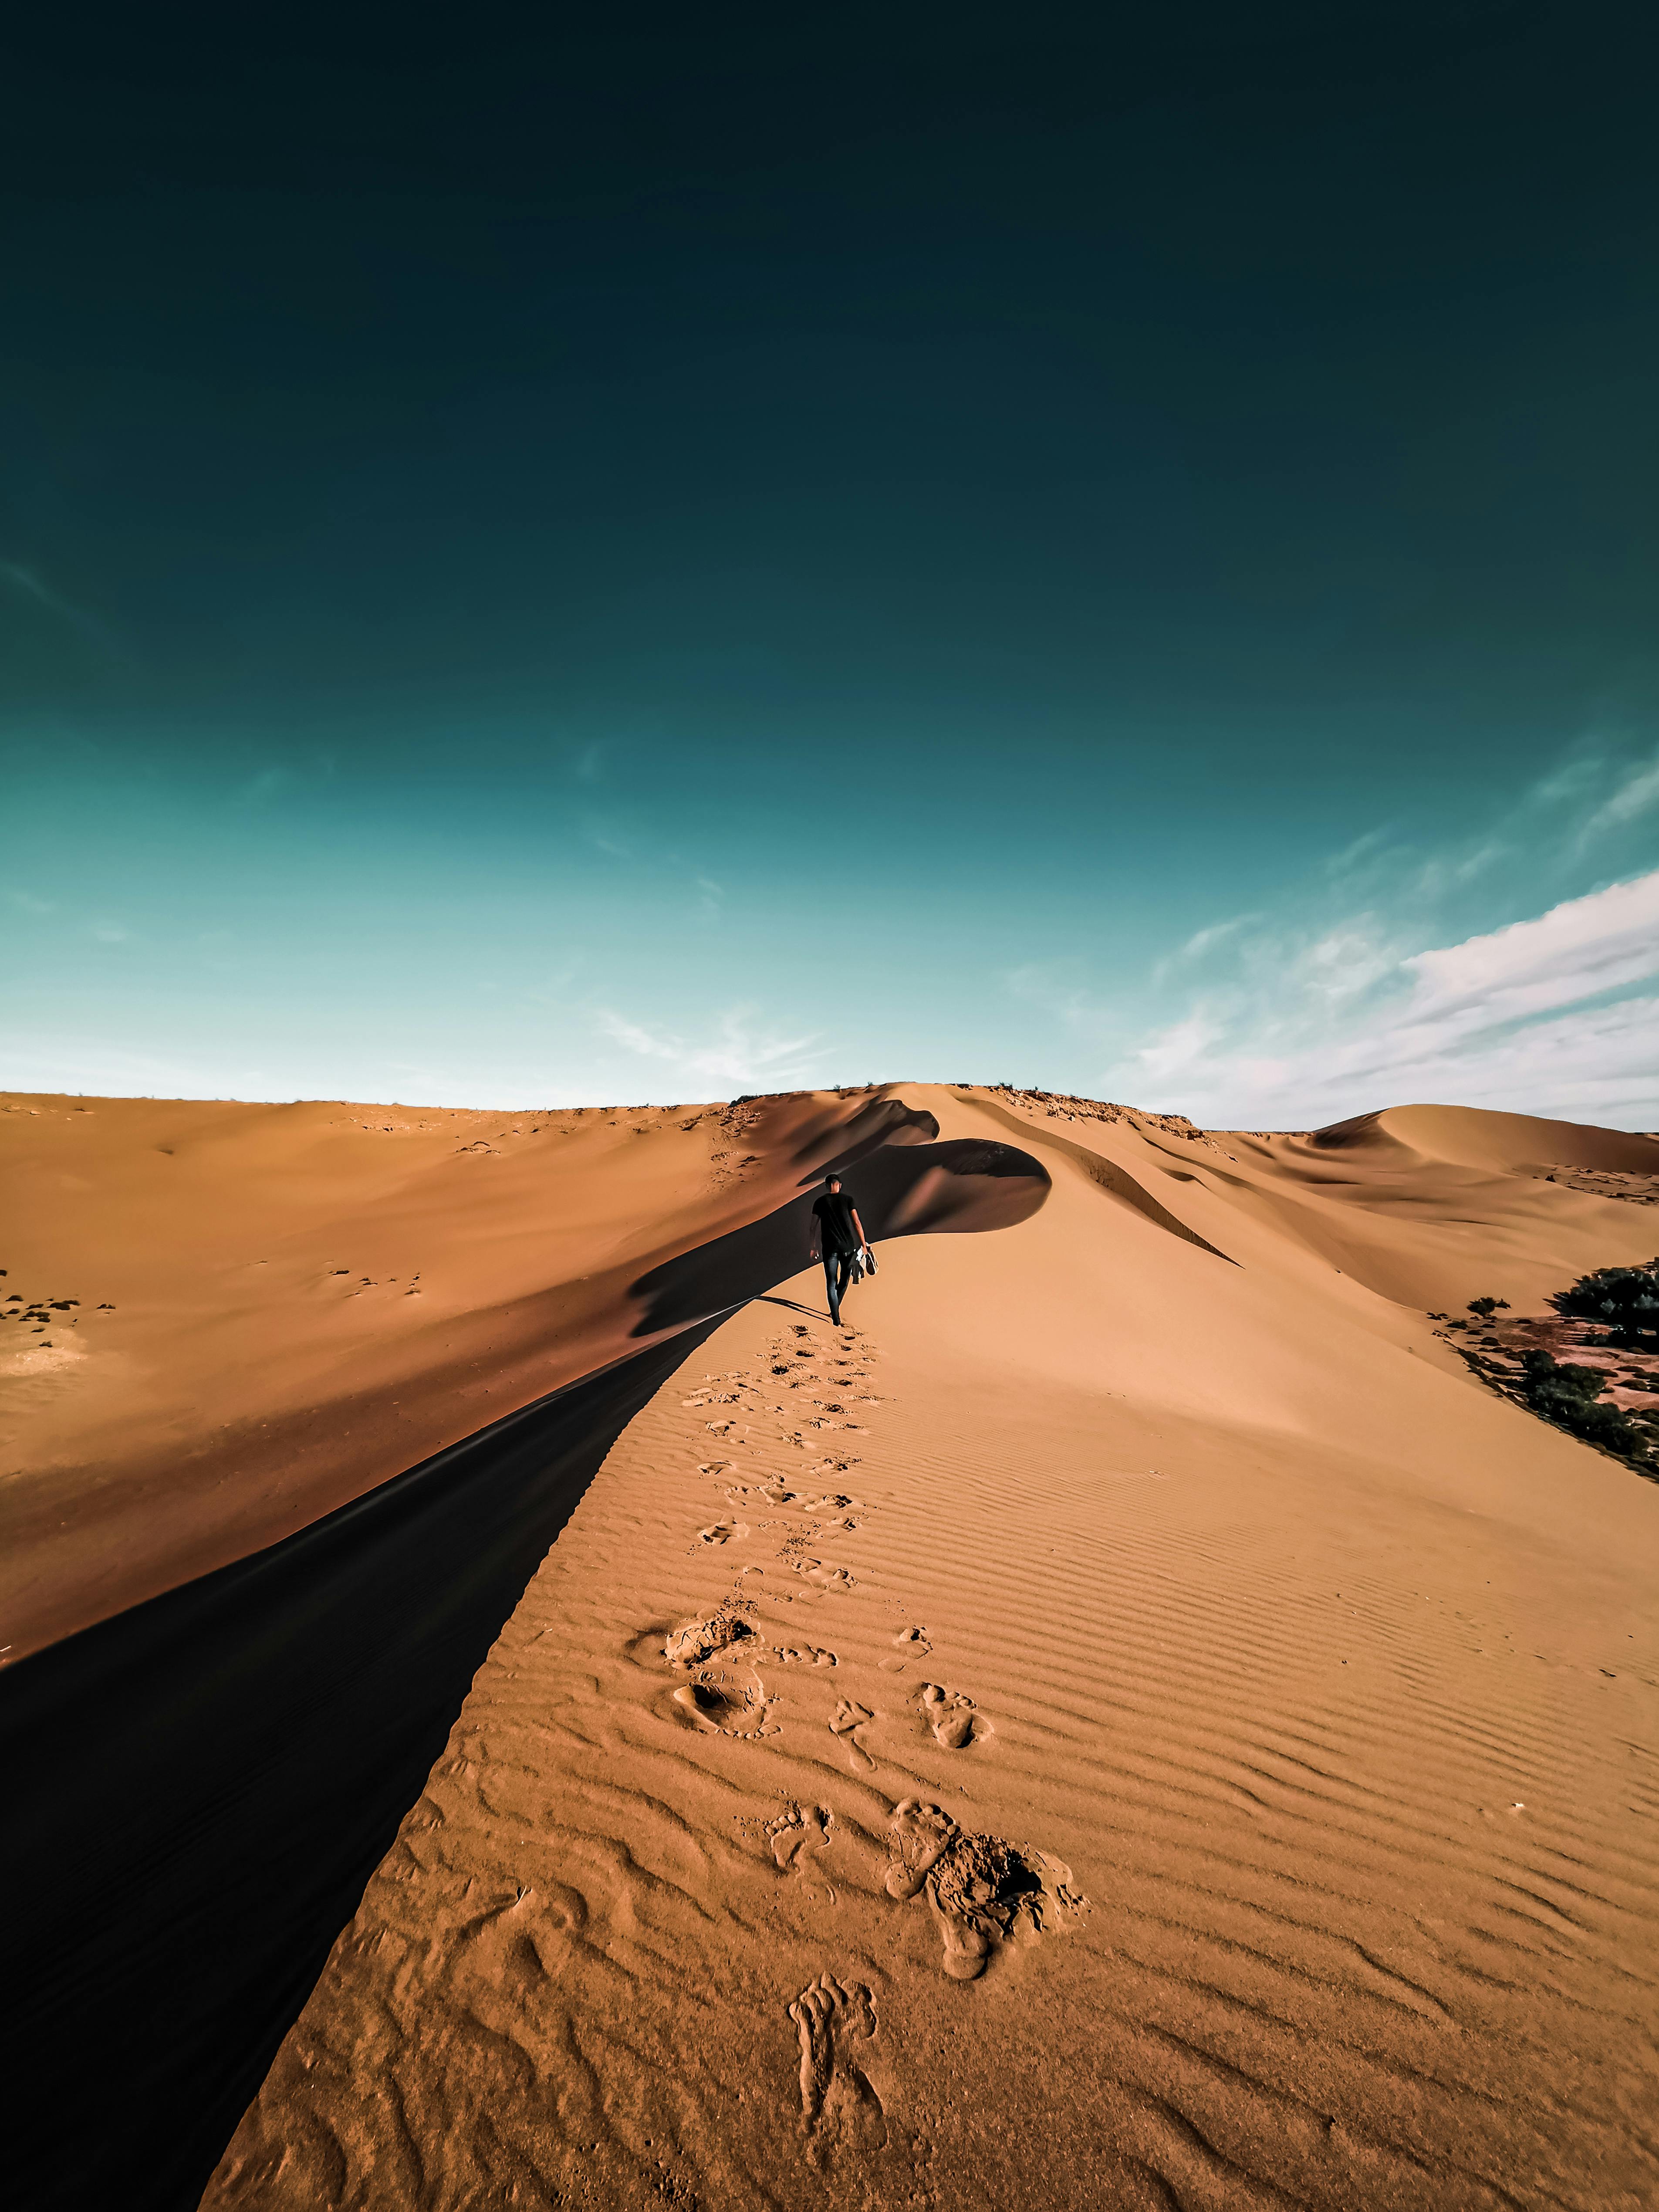 Man Walking on Top of Desert Mountain · Free Stock Photo